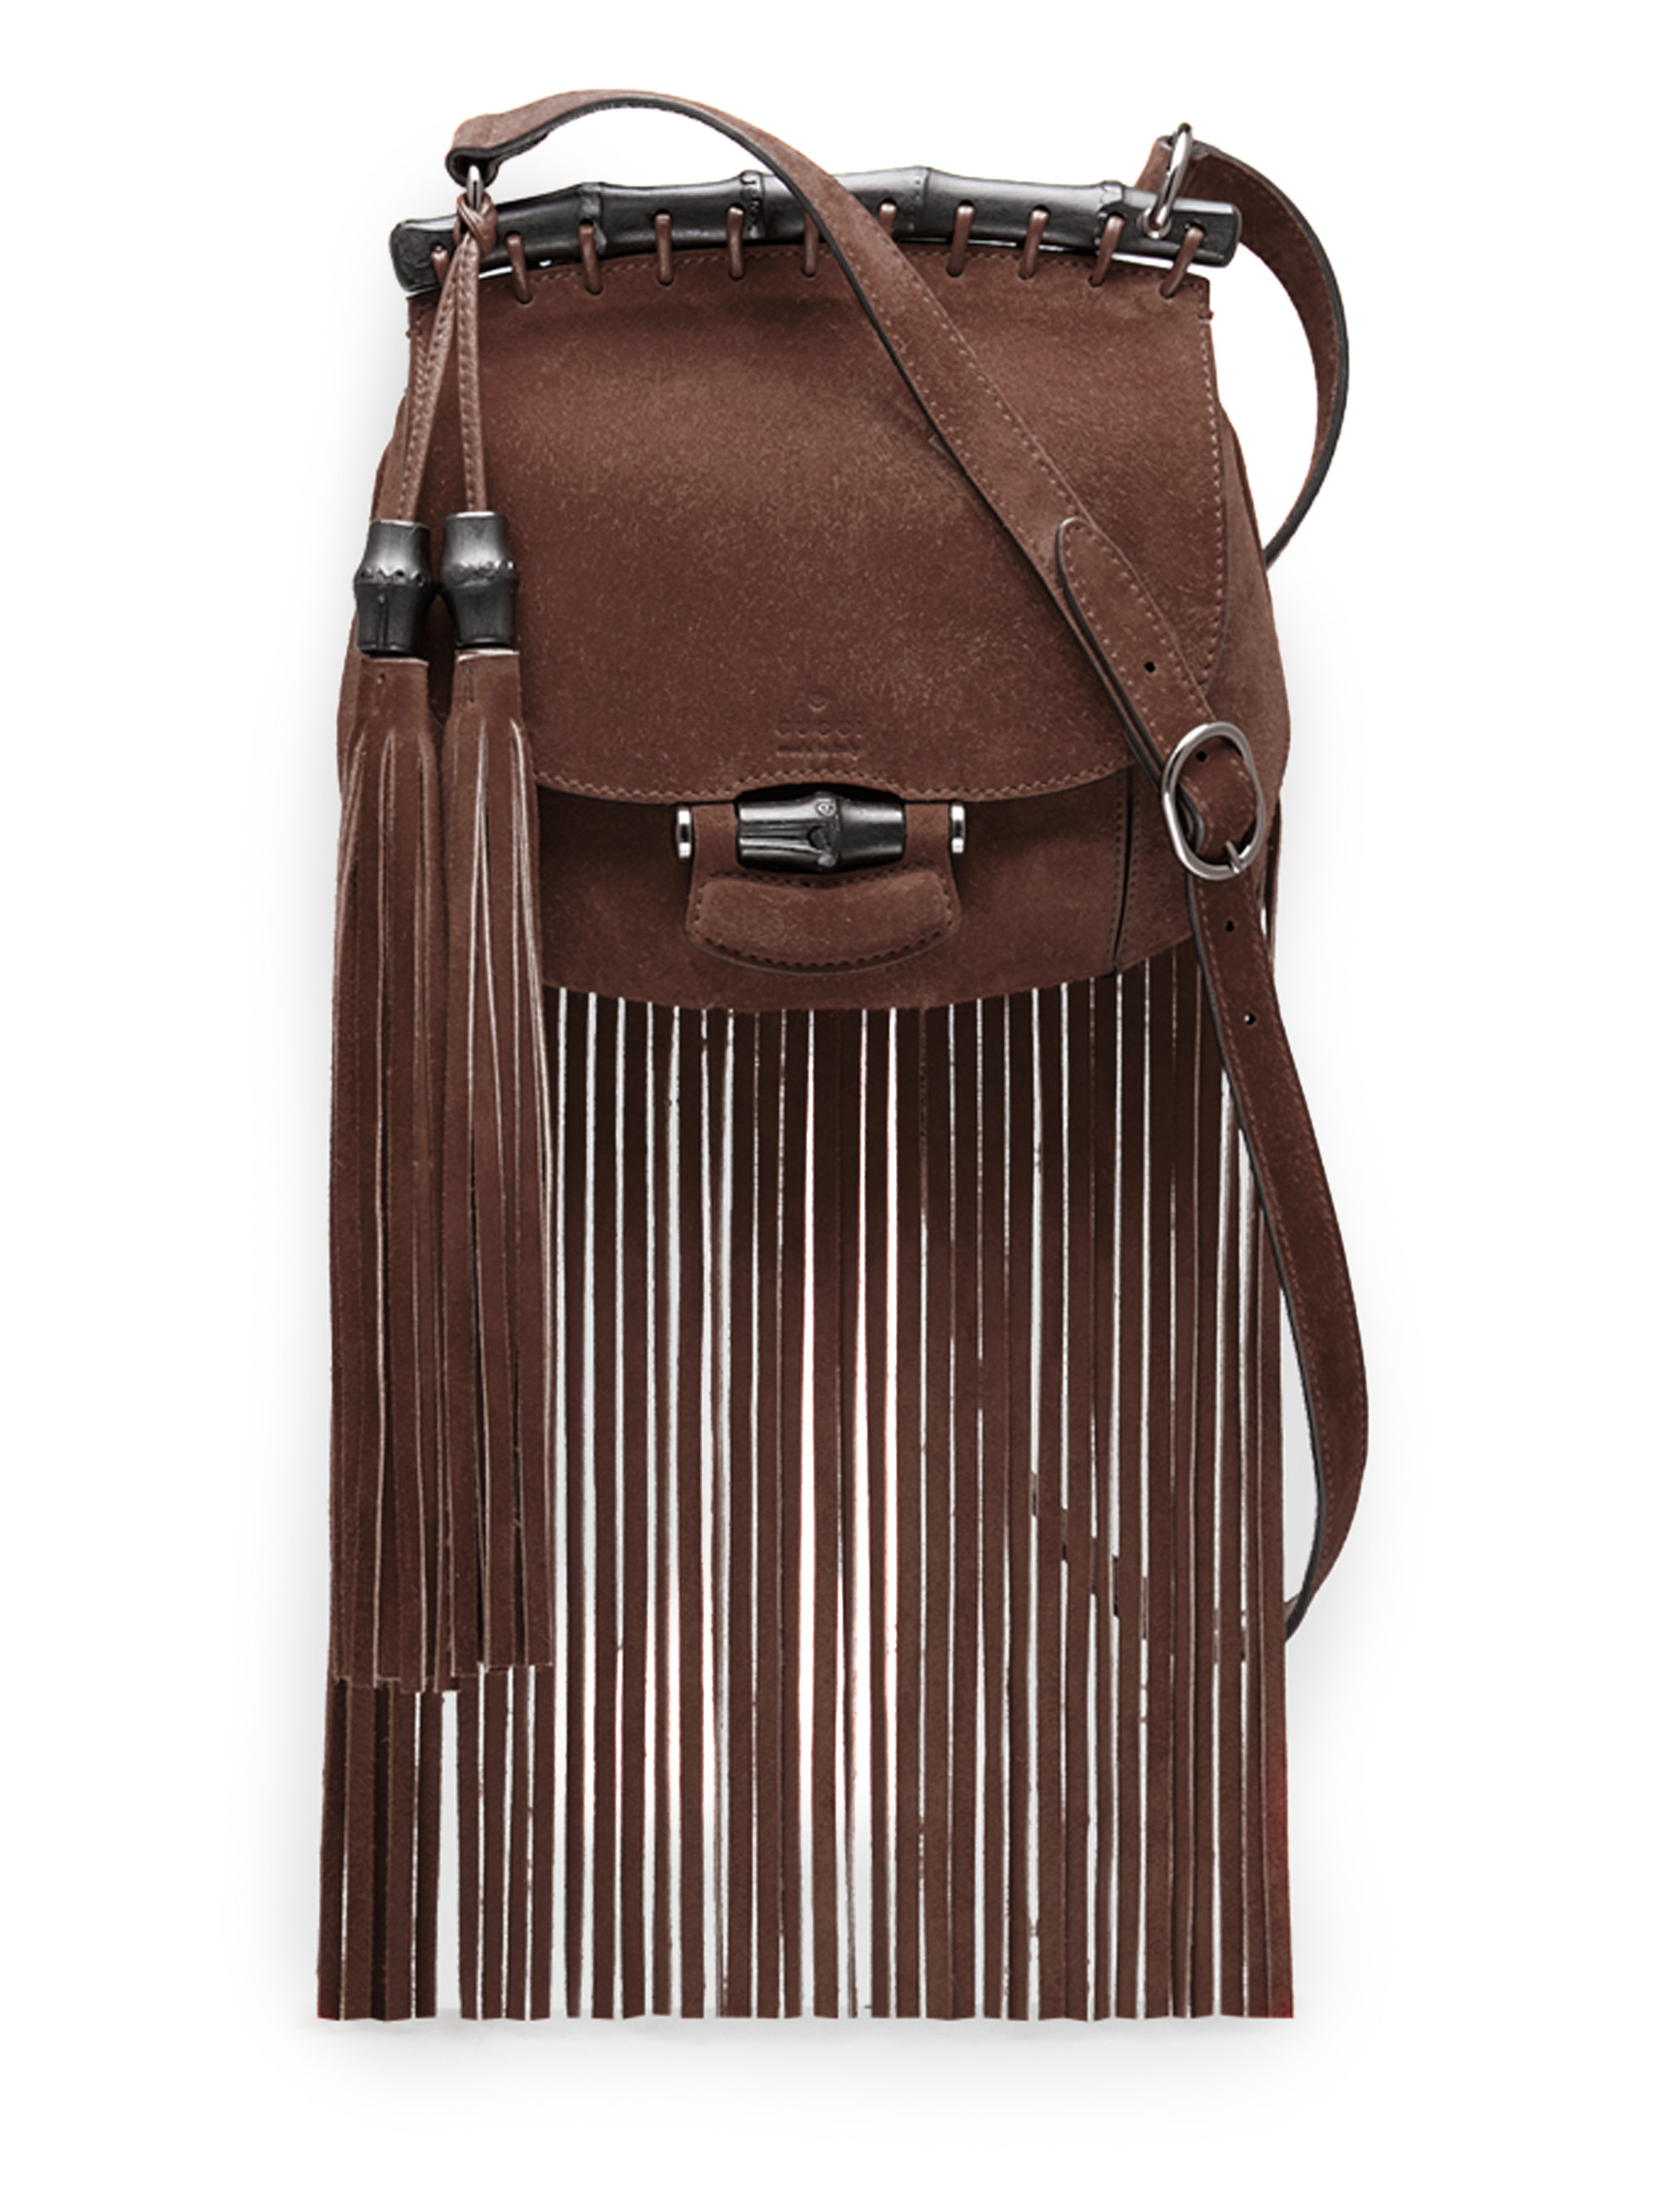 Gucci Nouveau Suede Fringe Shoulder Bag in Brown - Lyst